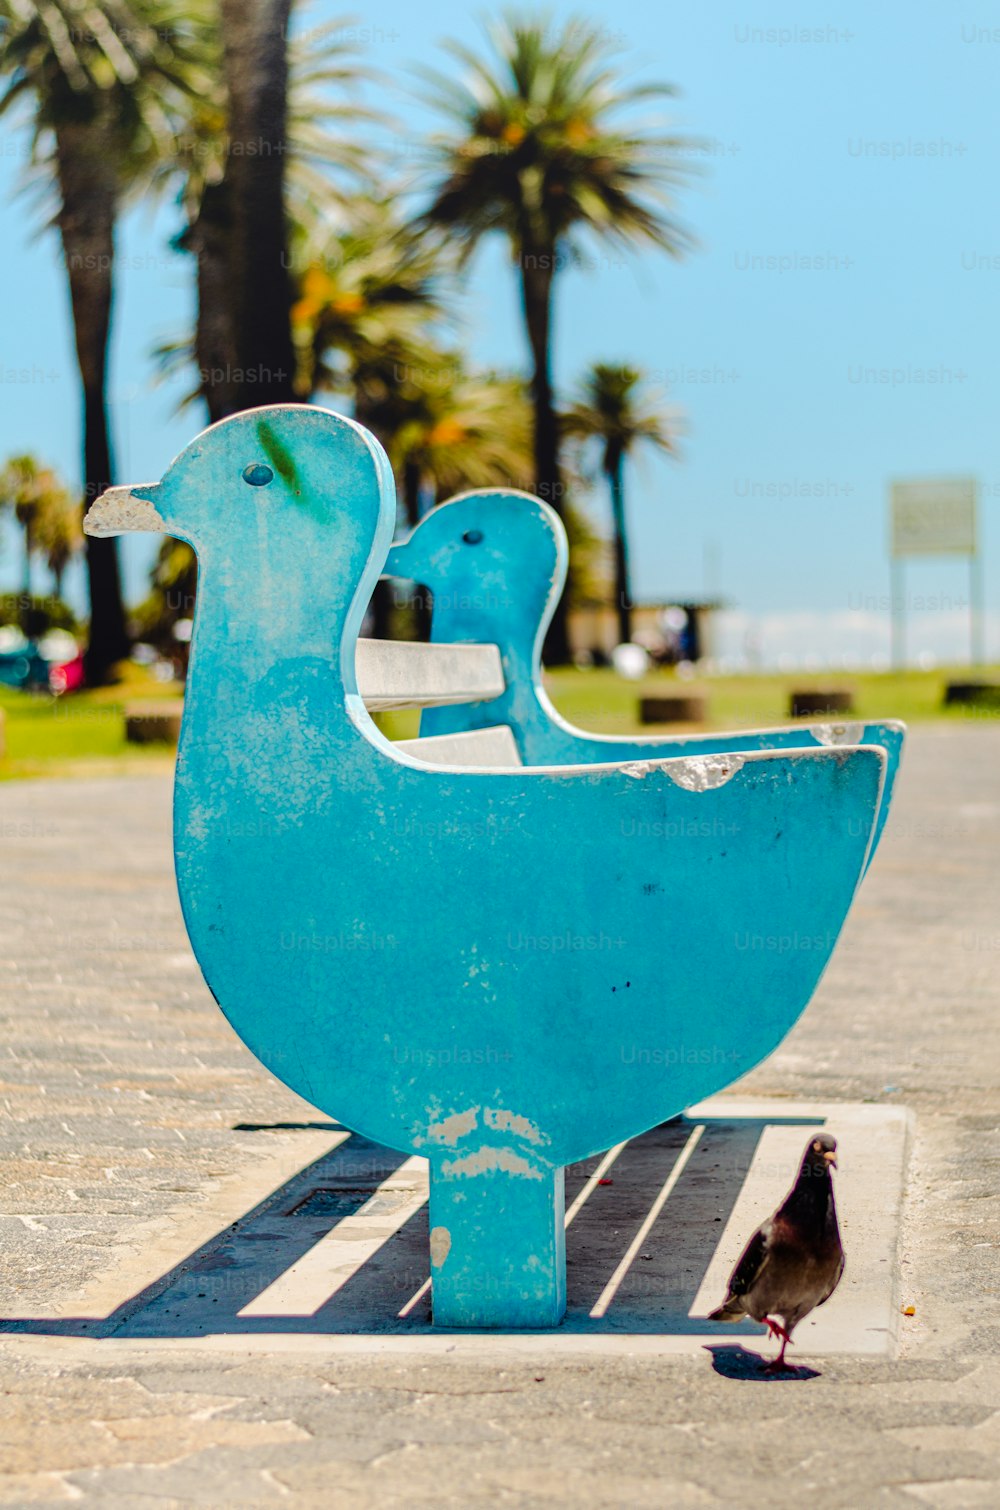 a small bird standing next to a blue sculpture